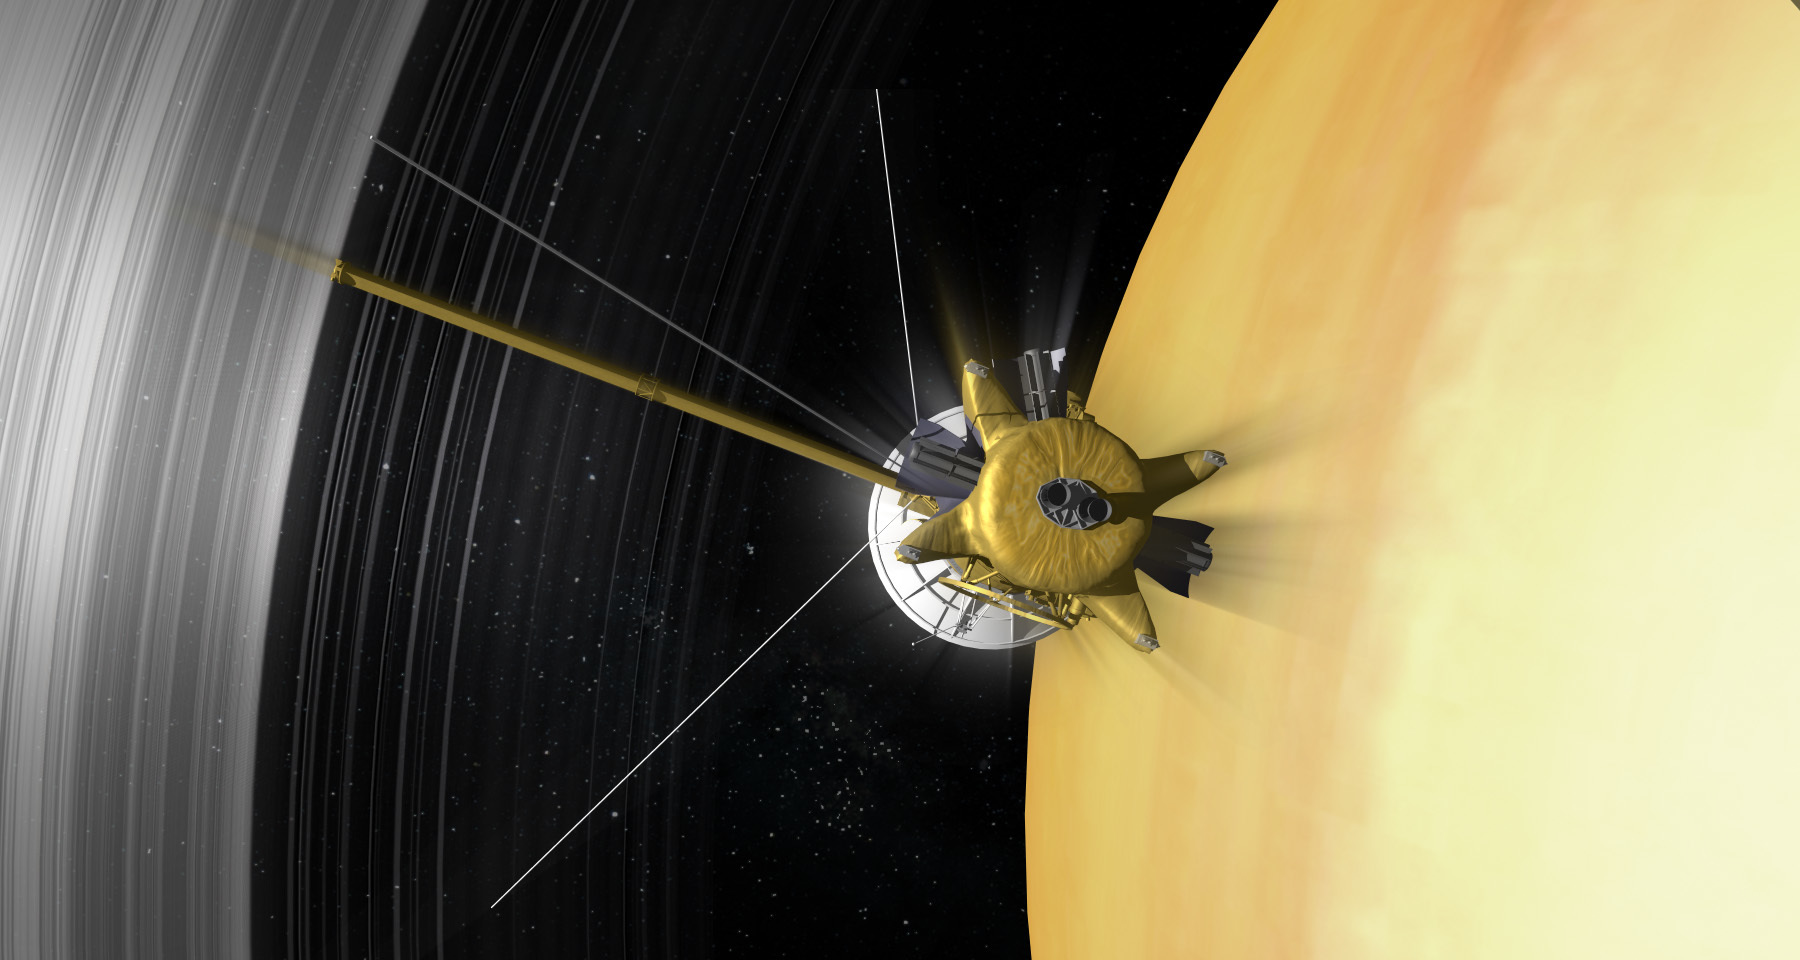 Giai đoạn kết thúc của phi thuyền Cassini